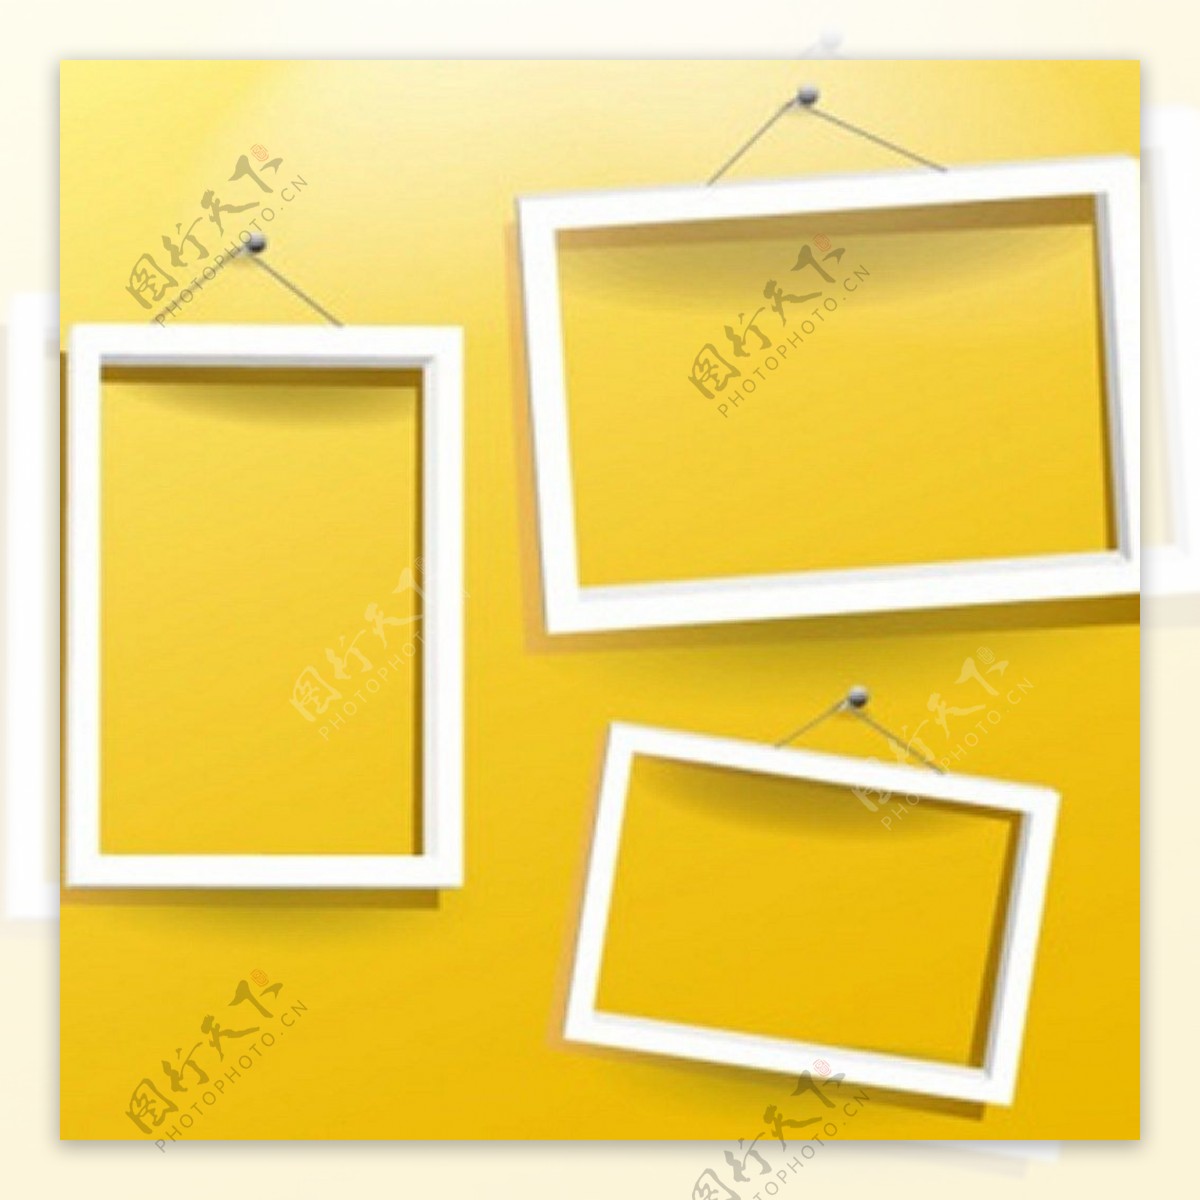 三白色的简单框架的黄色背景